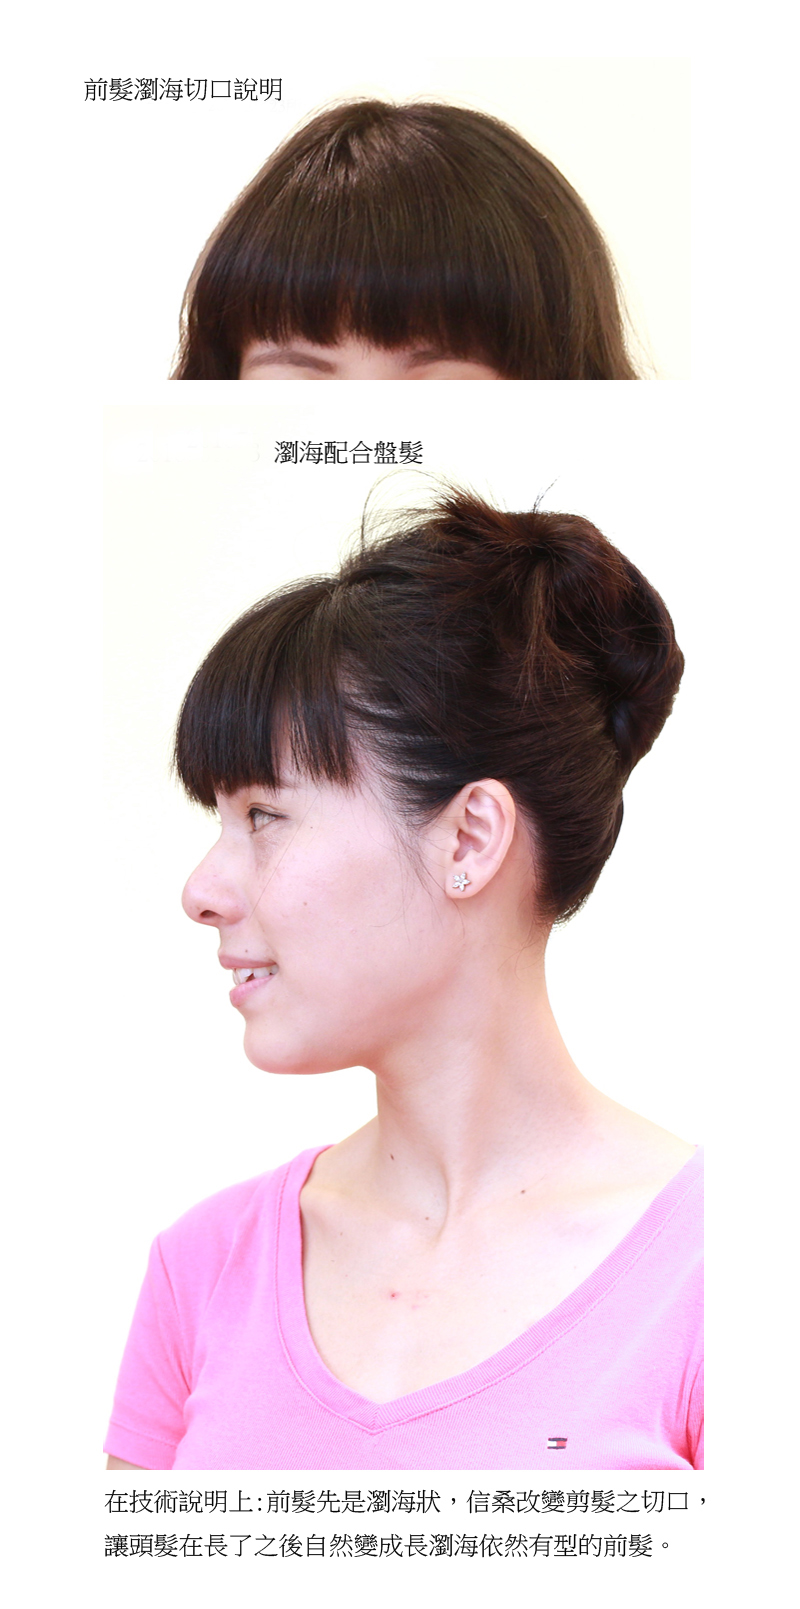 20160623陳小姐髮型前髮變化說明組圖1